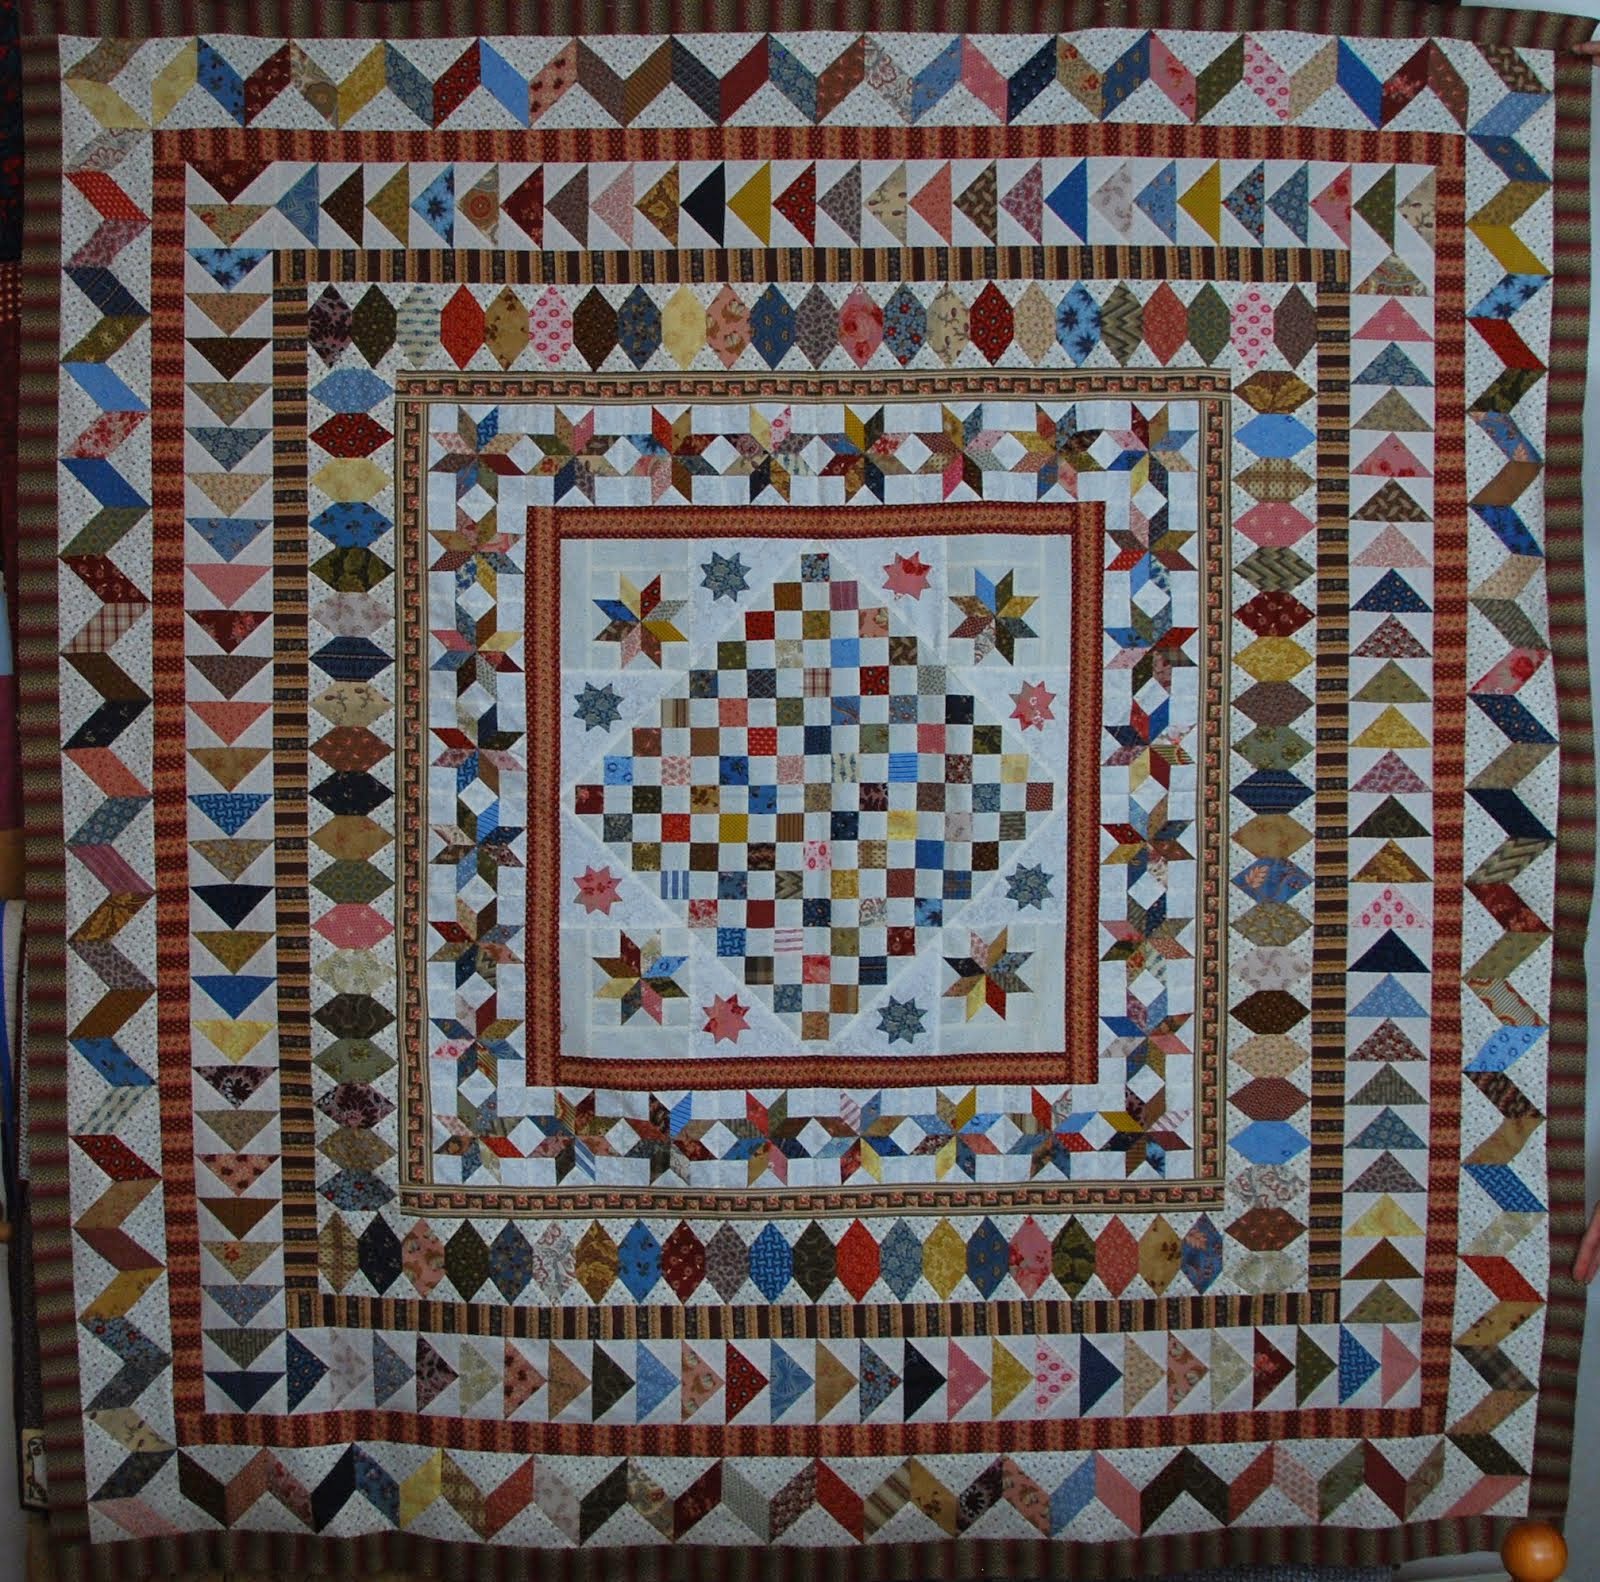 Mijn Antieke quilt (patroon Guute)